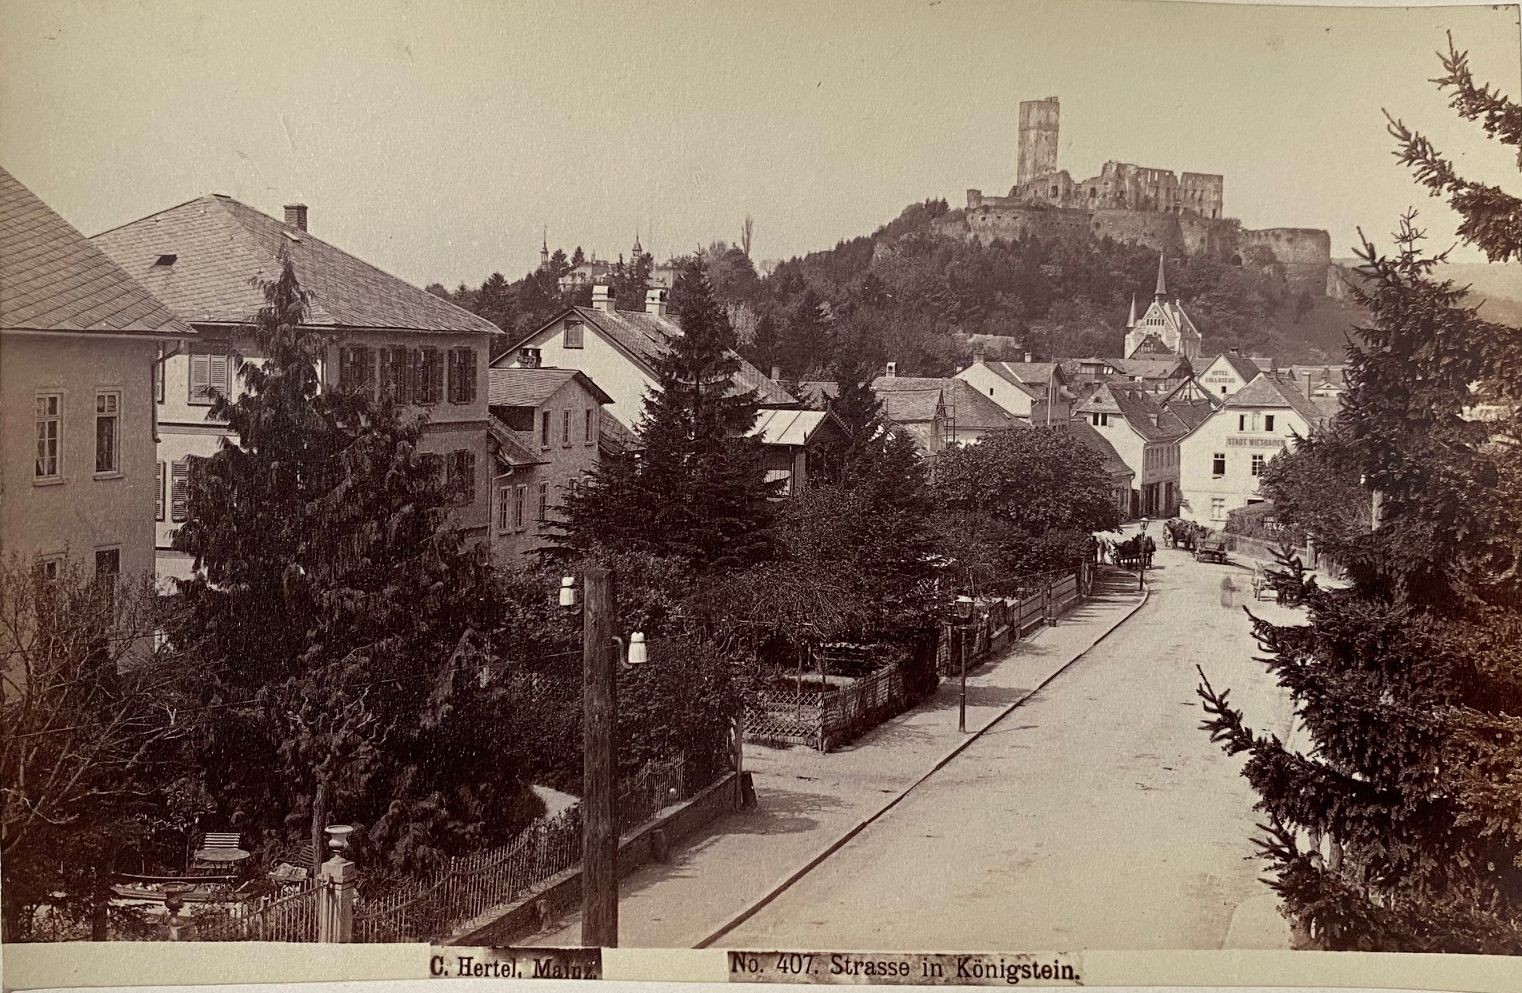 Fotografie, Carl Hertel No. 360, Königstein das Hainbad, ca. 1885 (Taunus-Rhein-Main - Regionalgeschichtliche Sammlung Dr. Stefan Naas CC BY-NC-SA)